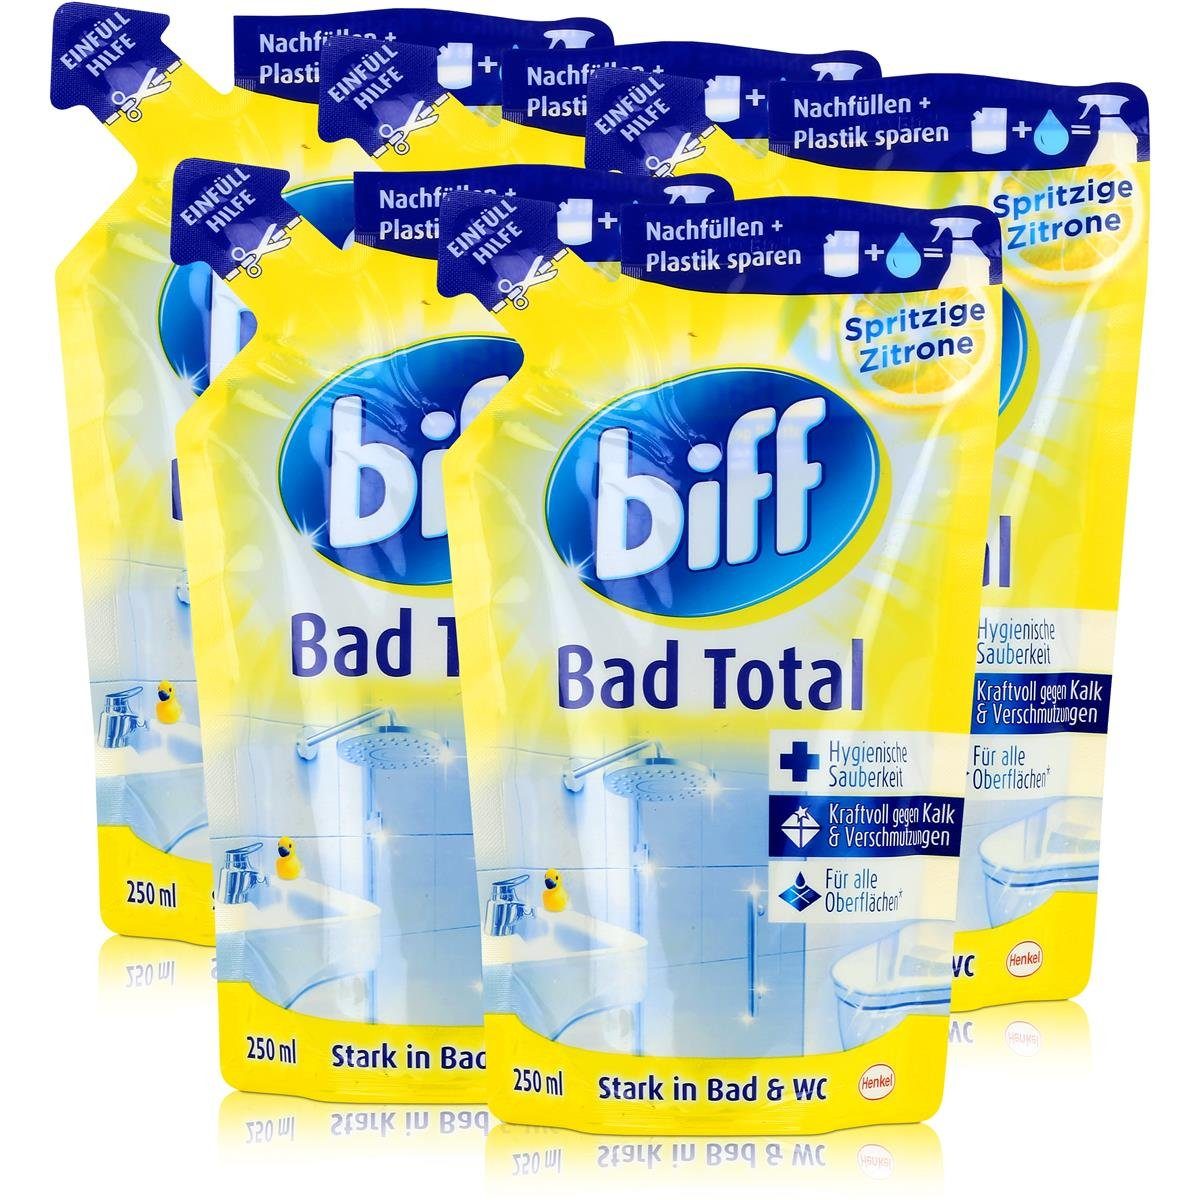 Zitrone Badreiniger Biff Total Kalk gegen biff Kraftvoll - Nachfüllbeutel (5e Bad 250ml